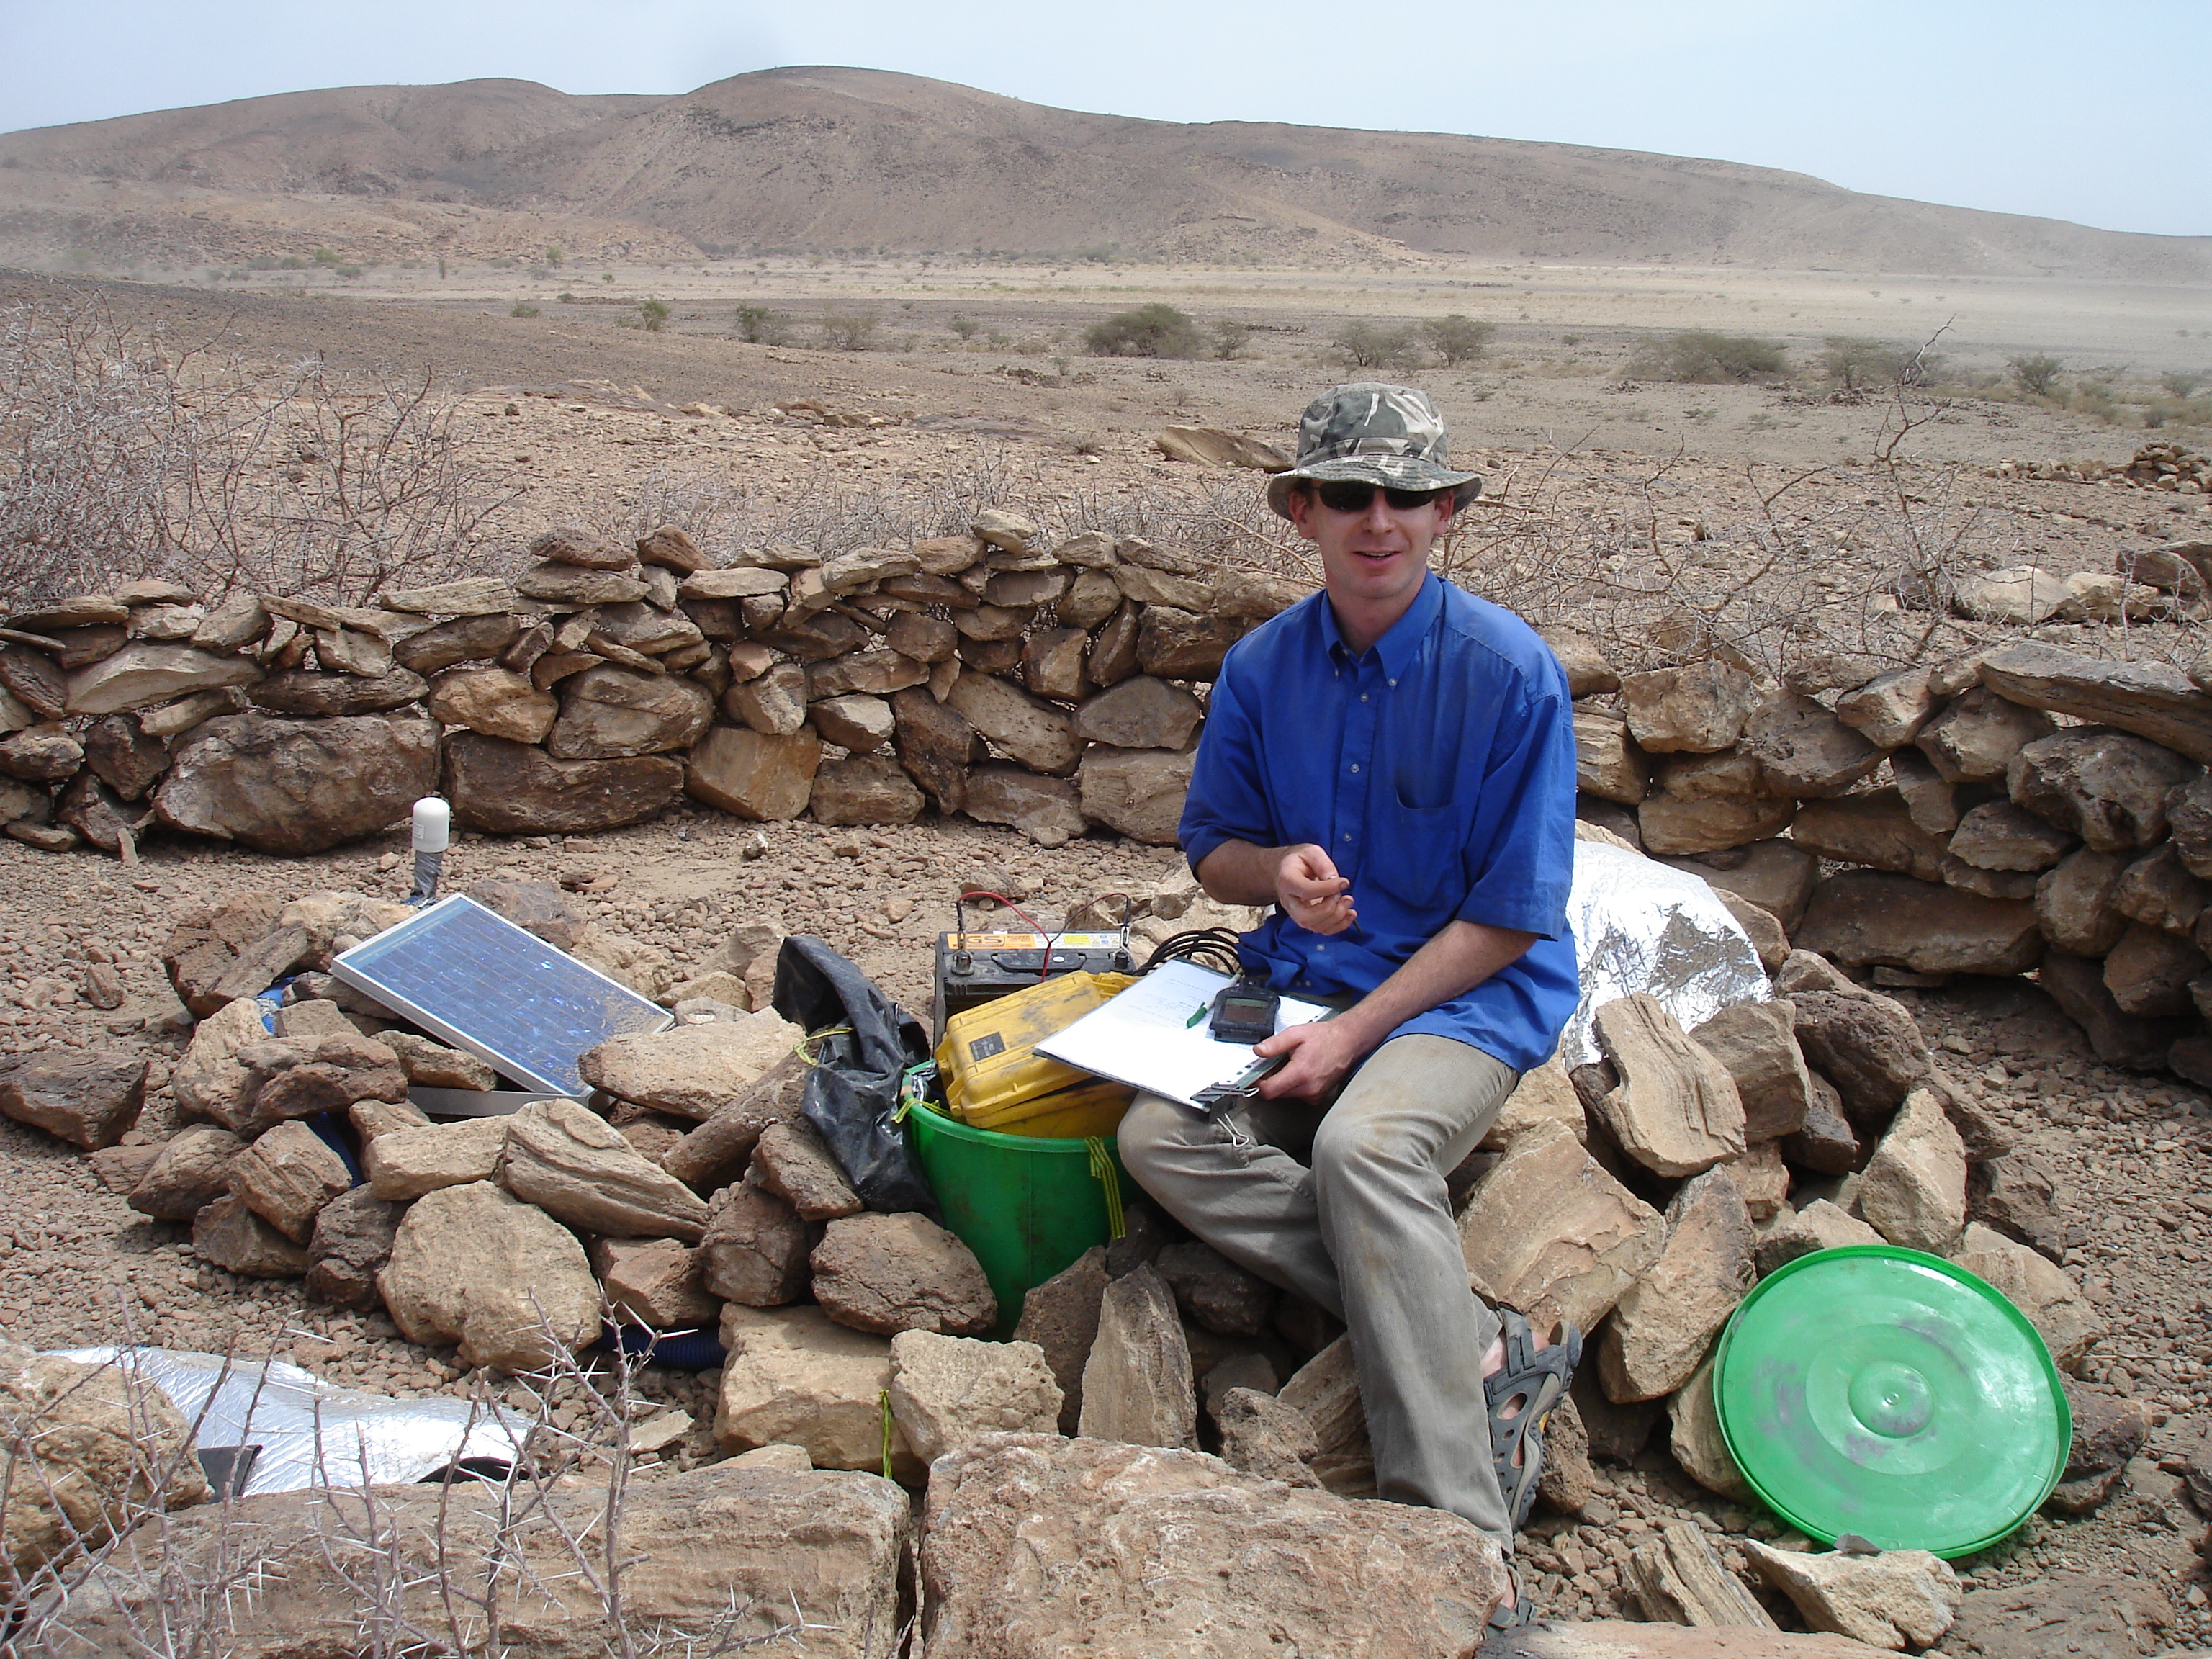 Derek Keir checking the seismic instruments